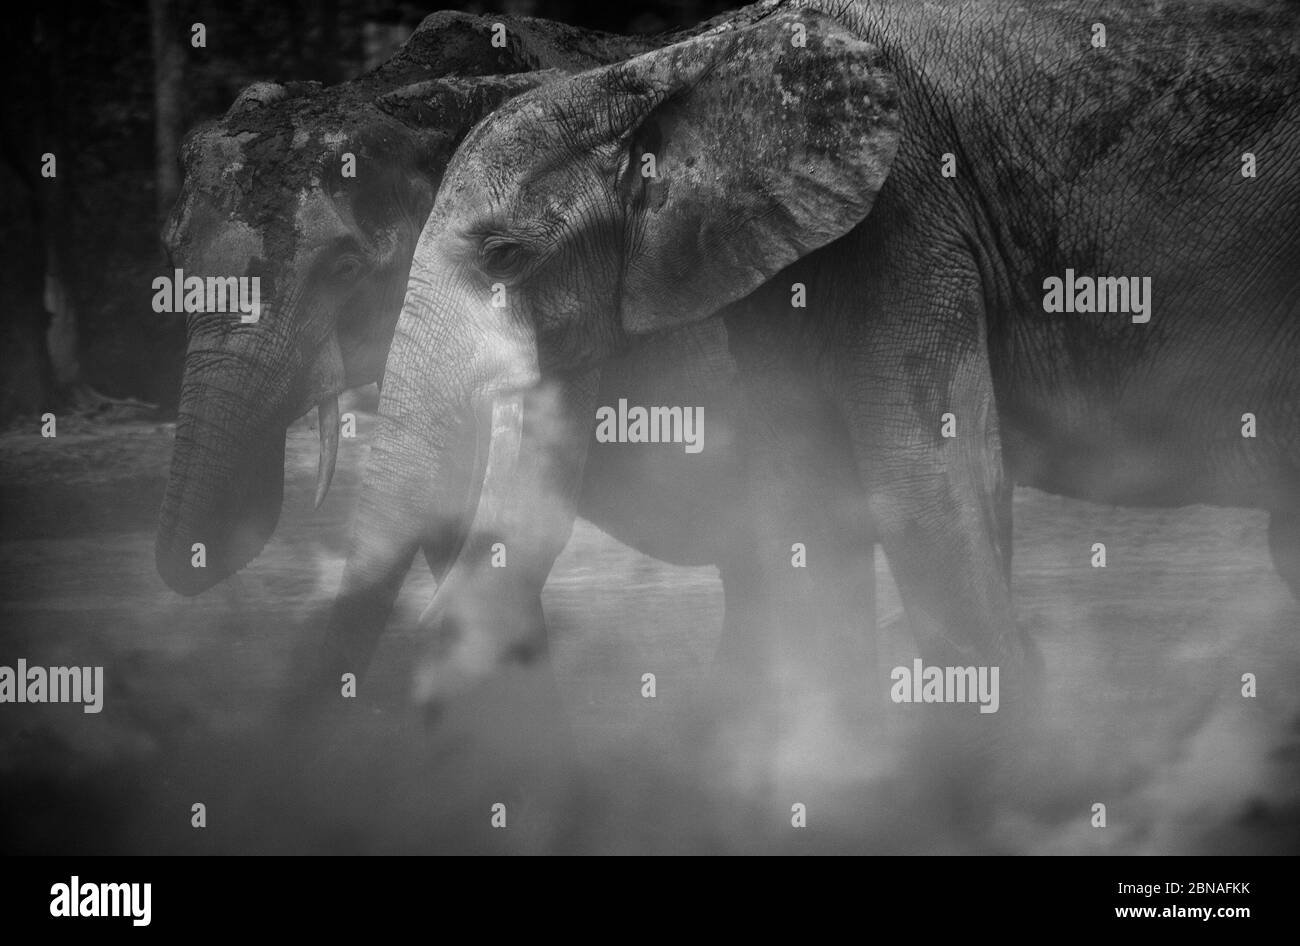 Afrikanische Waldelefanten (Loxodonta africana cyclotis) in Dzanga Bai. Elefanten besuchen die Waldlichtungen (BAI), um Salz zu erhalten, das in t gelöst wird Stockfoto